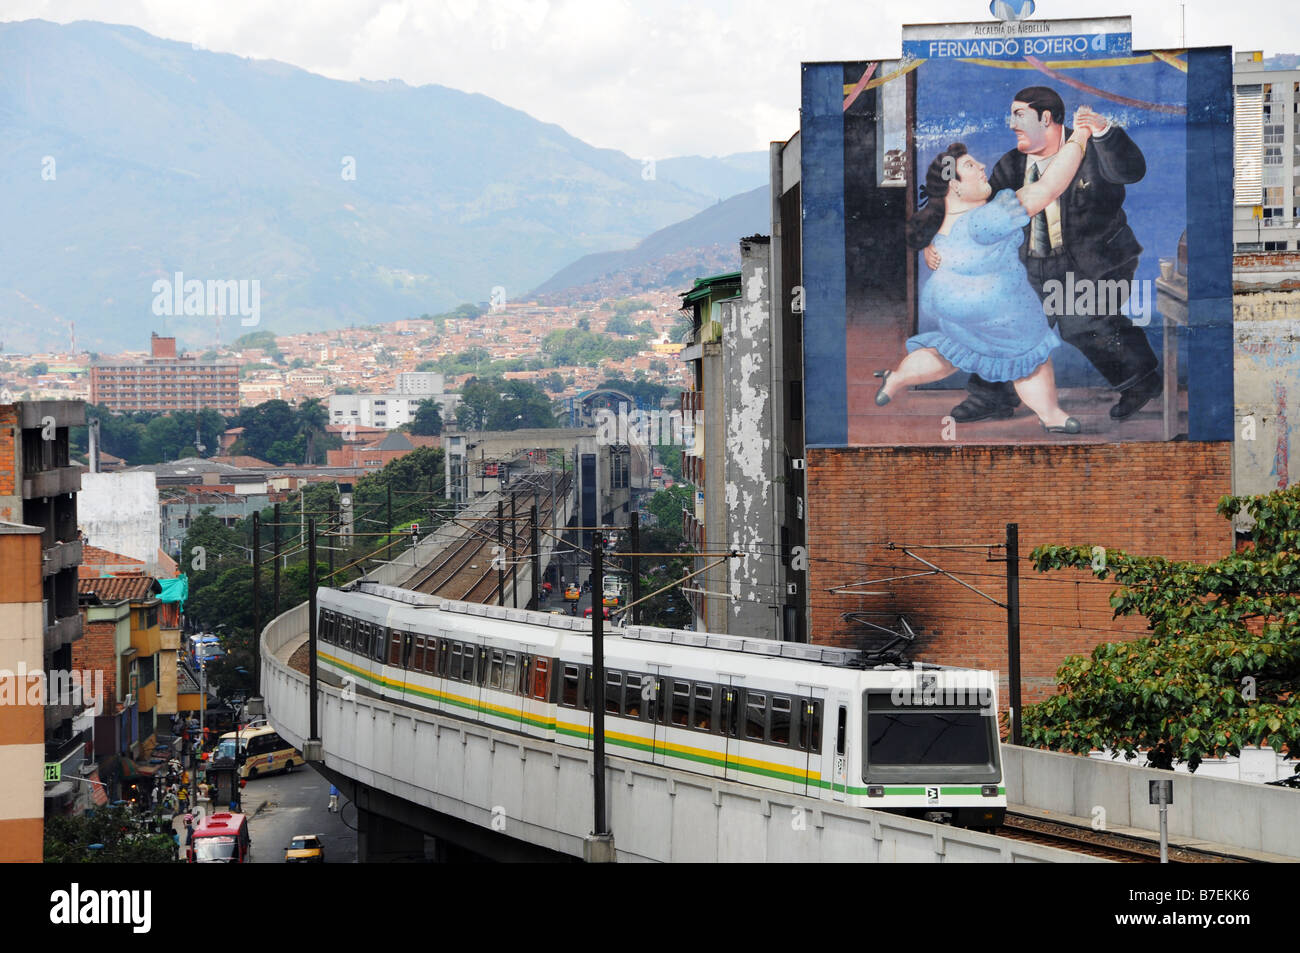 Ein Panoramablick über Medellin, Kolumbien und der u-Bahn Zug der in der Stadt tätig ist. Stockfoto